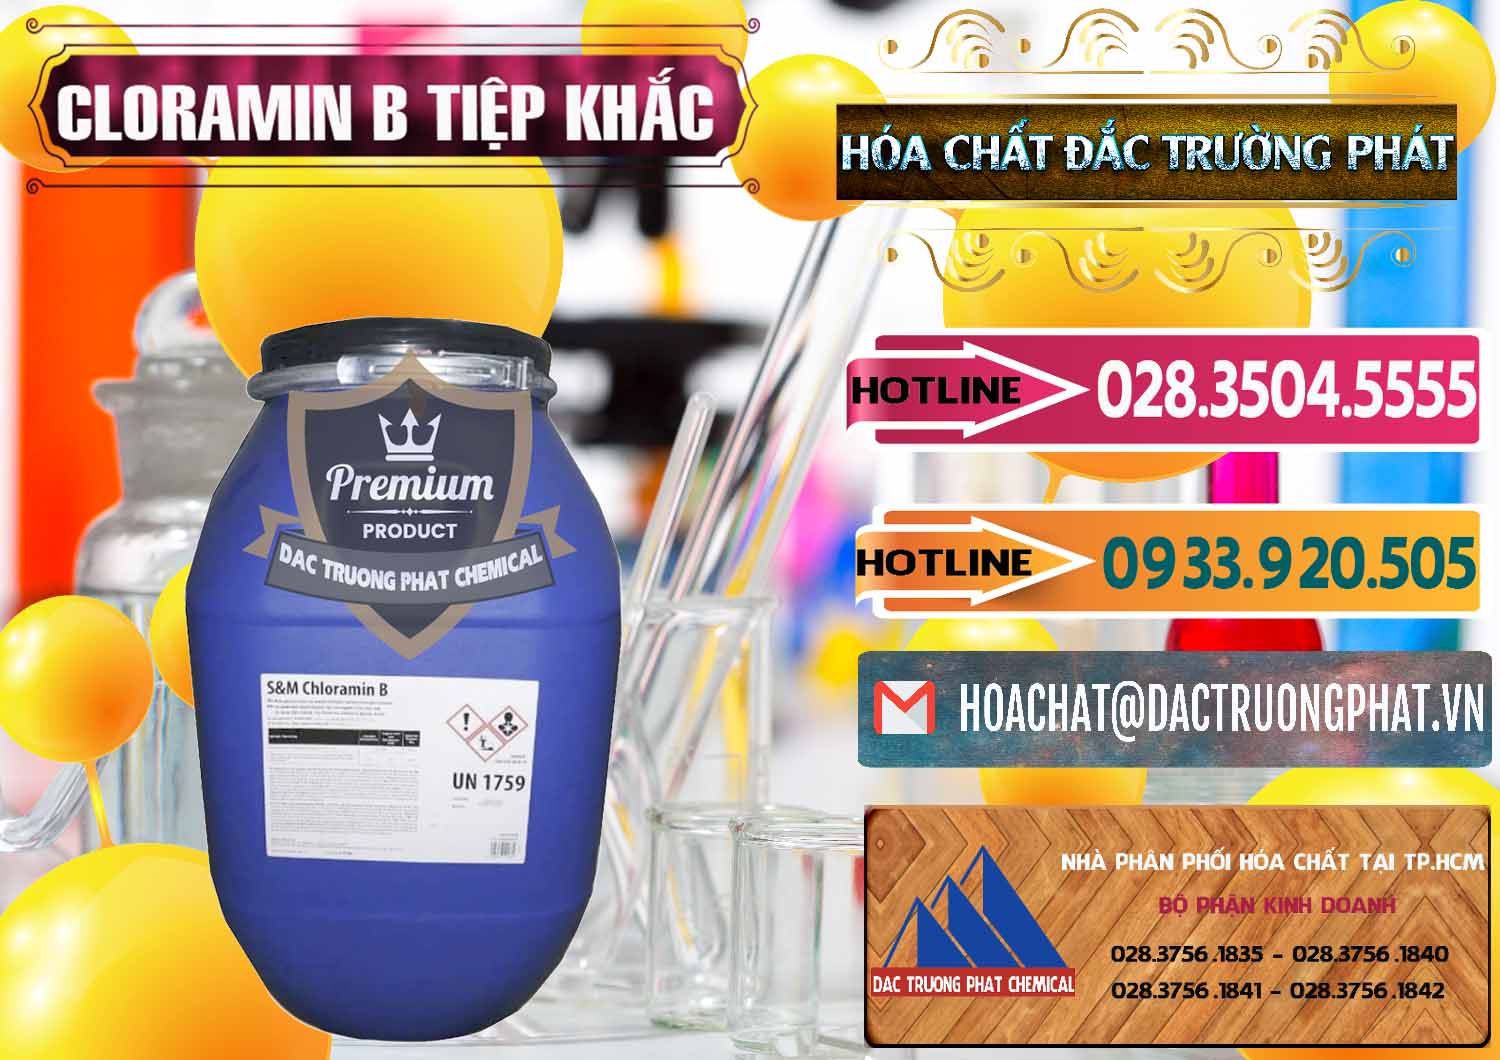 Cty chuyên phân phối và bán Cloramin B Cộng Hòa Séc Tiệp Khắc Czech Republic - 0299 - Cty cung cấp ( bán ) hóa chất tại TP.HCM - dactruongphat.vn